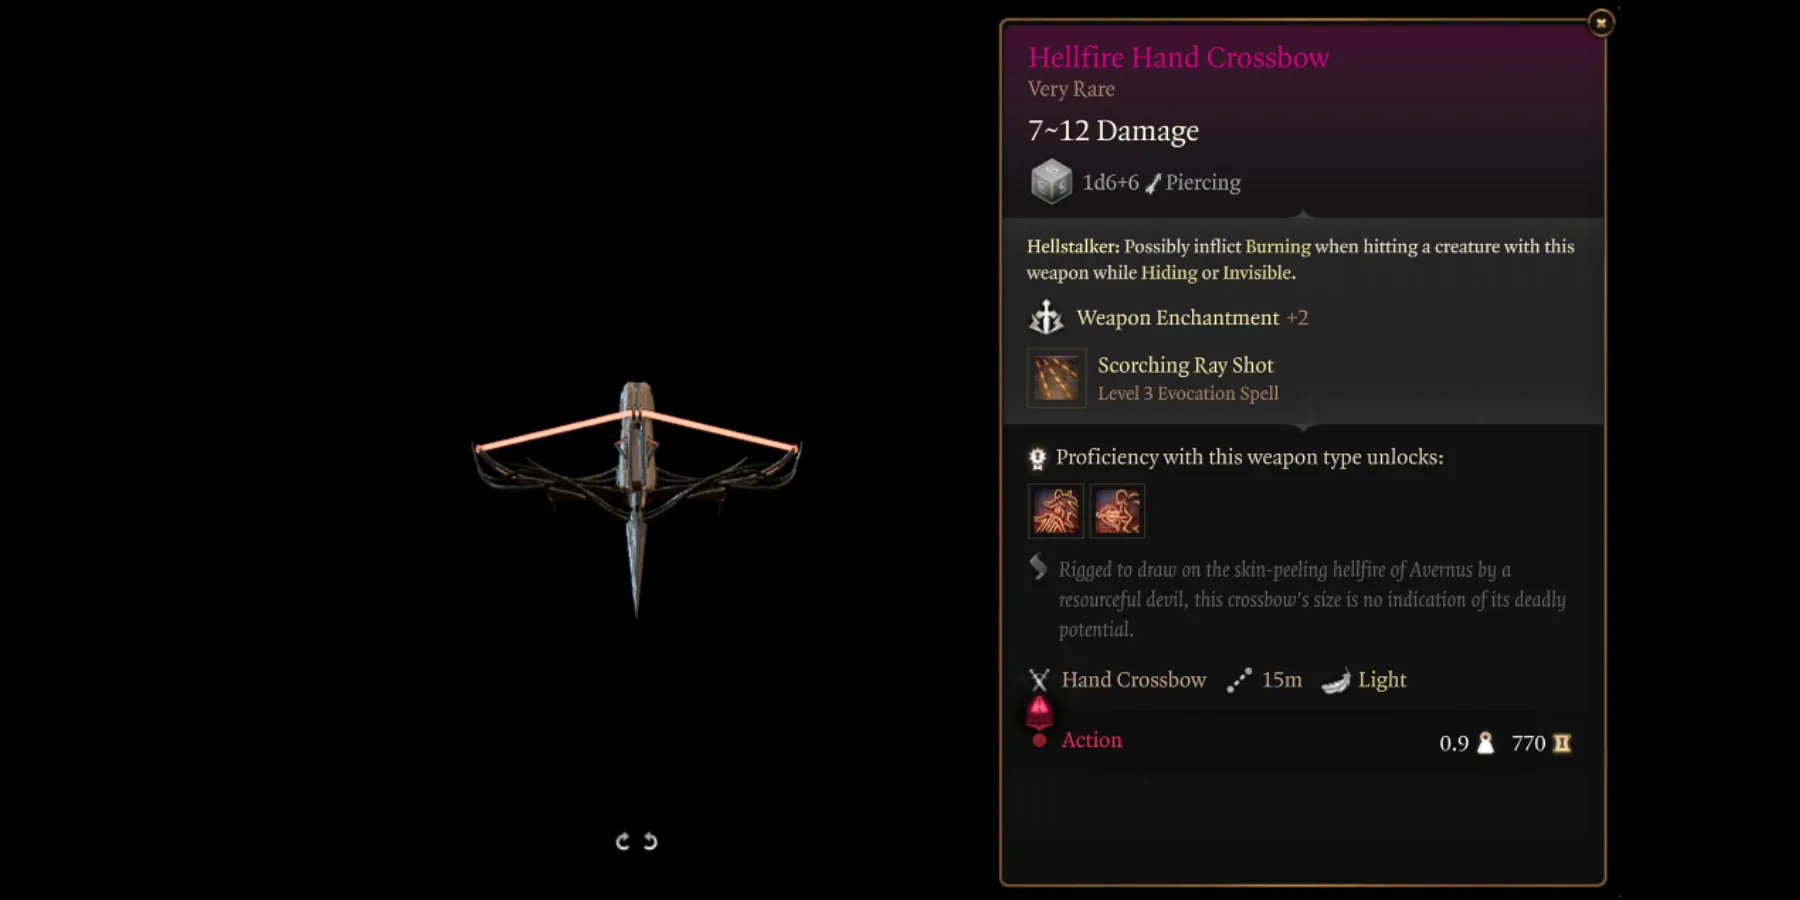 Hellfire Hand Crossbow